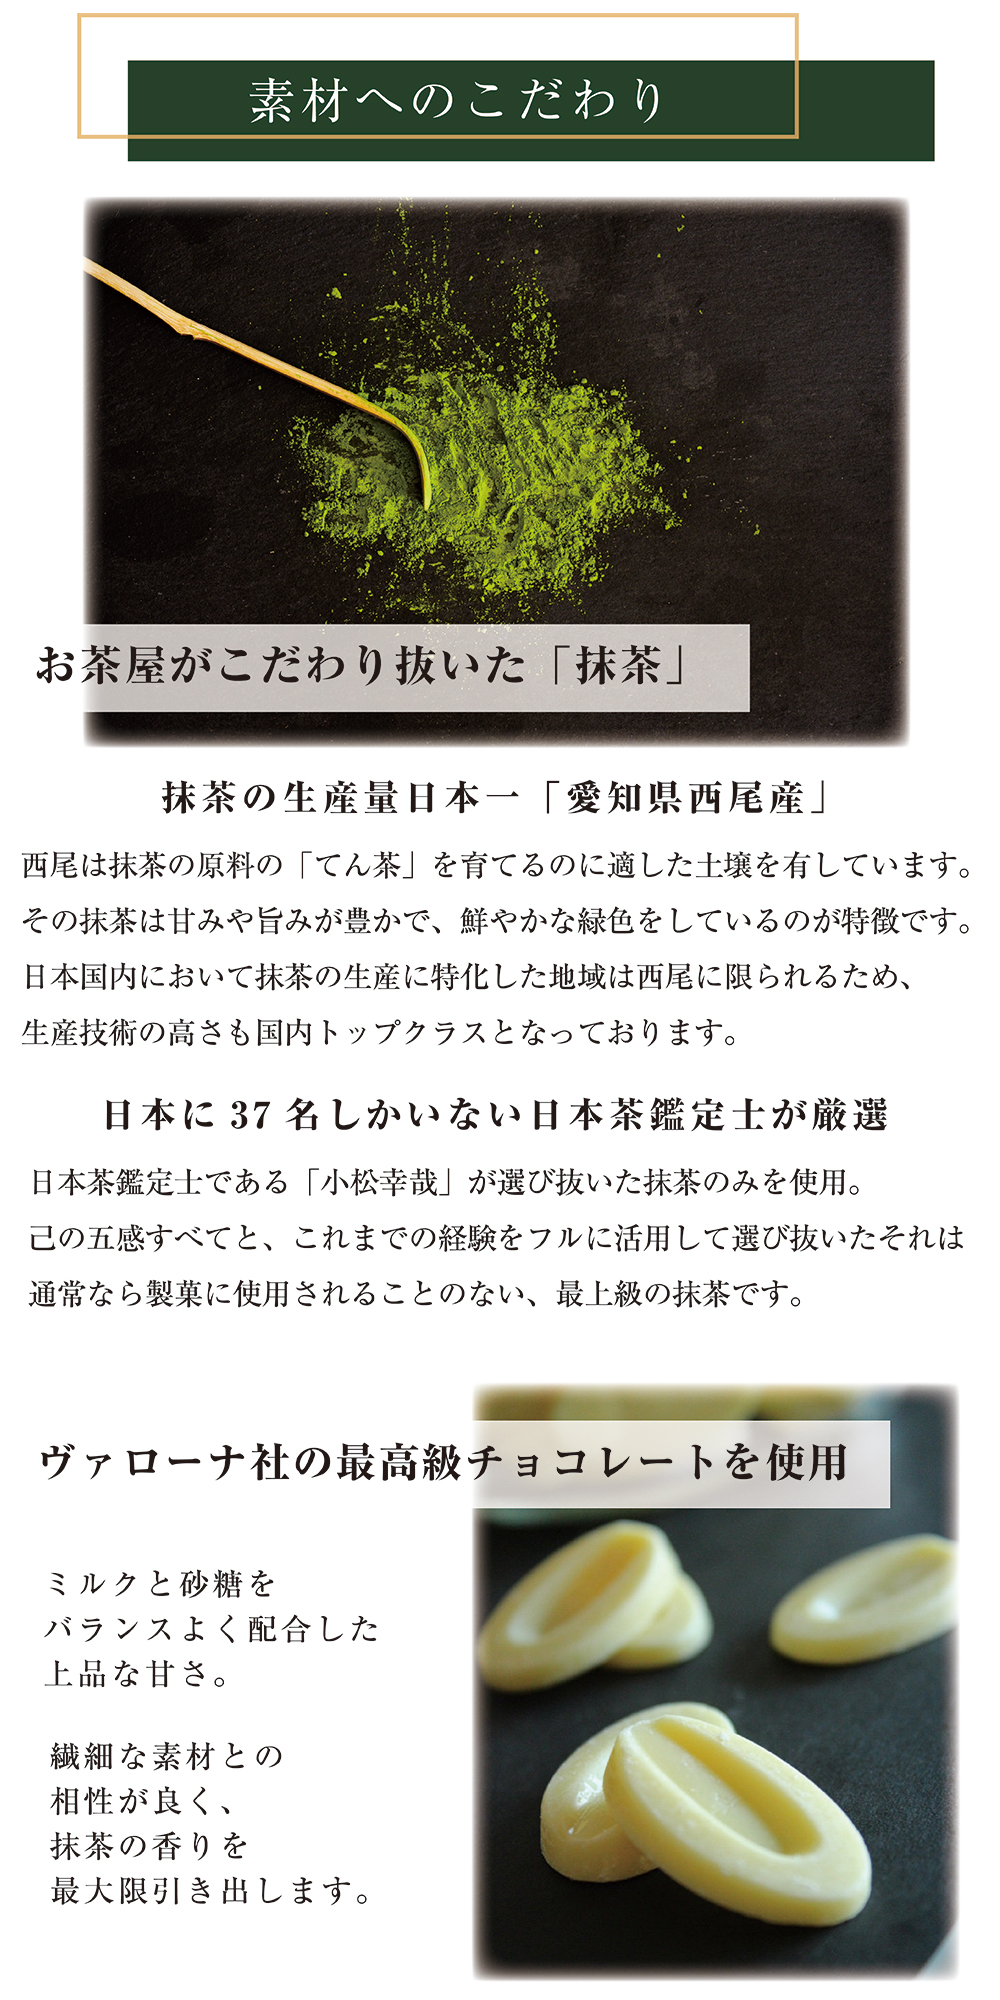 素材へのこだわり。抹茶の生産量日本一の愛知県西尾産。厳選するのは日本に37名しかいない日本茶鑑定士。ミルクチョコレートはヴァローナ社の高級品。